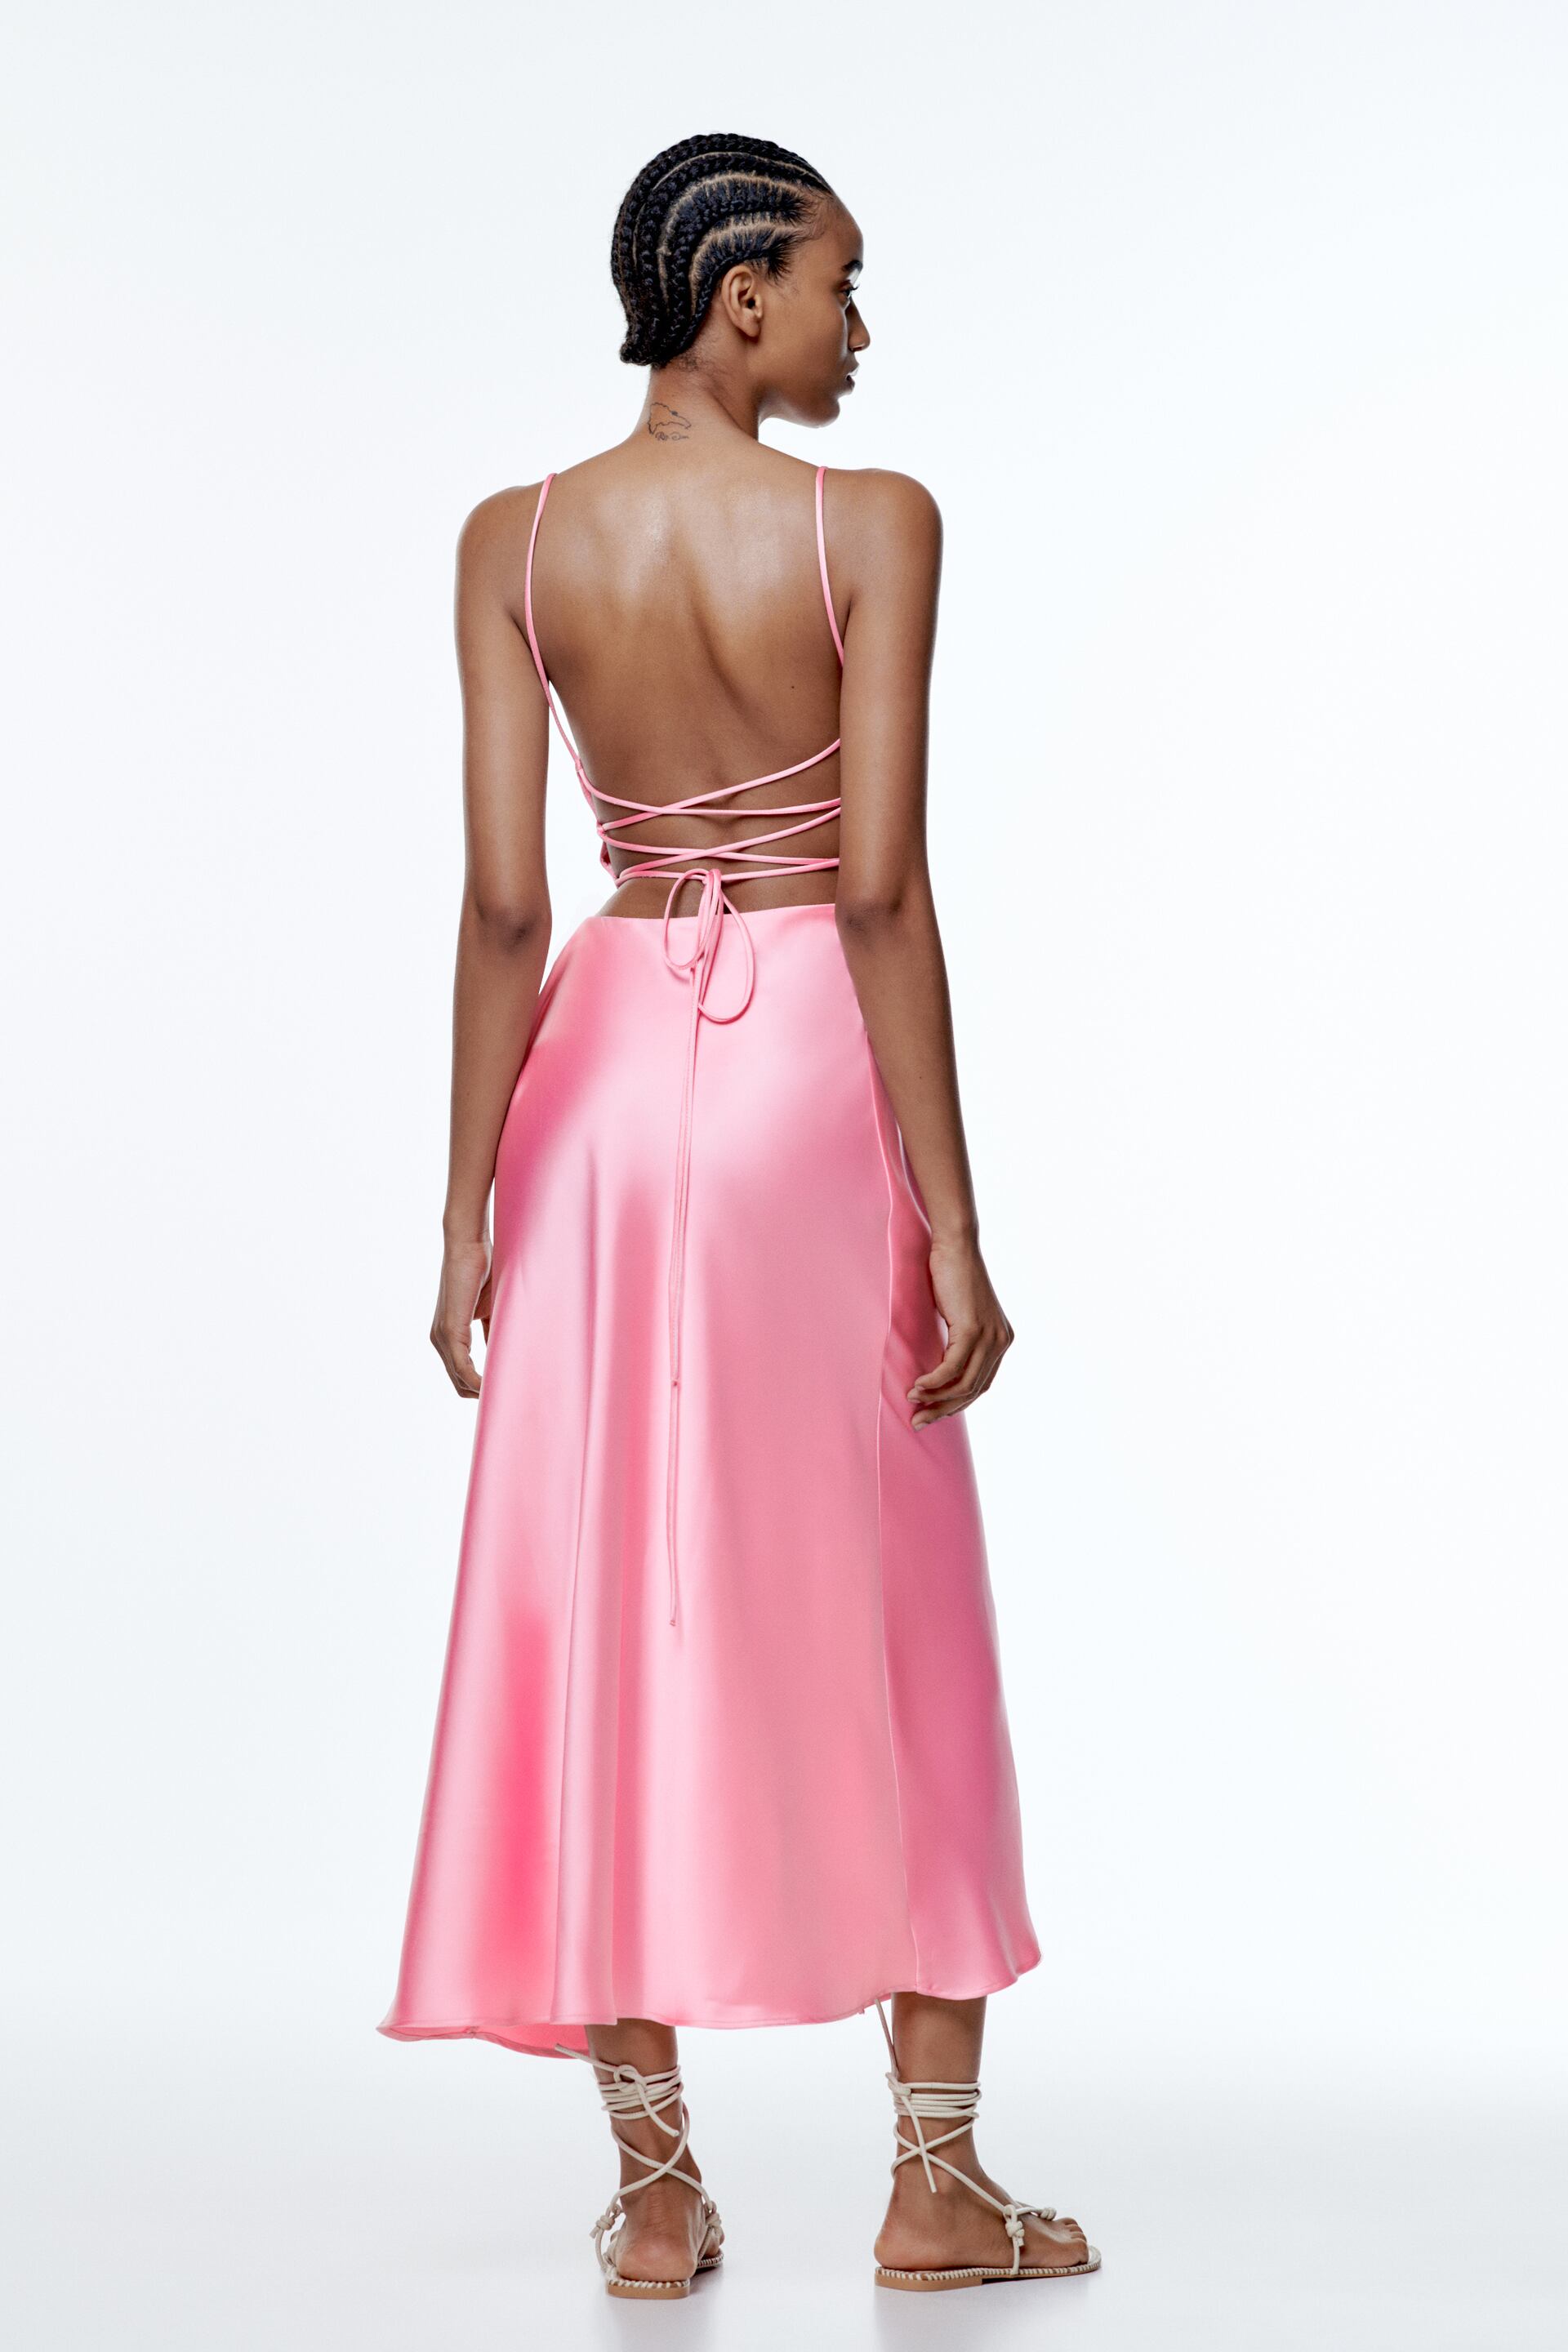 zara pink dress short